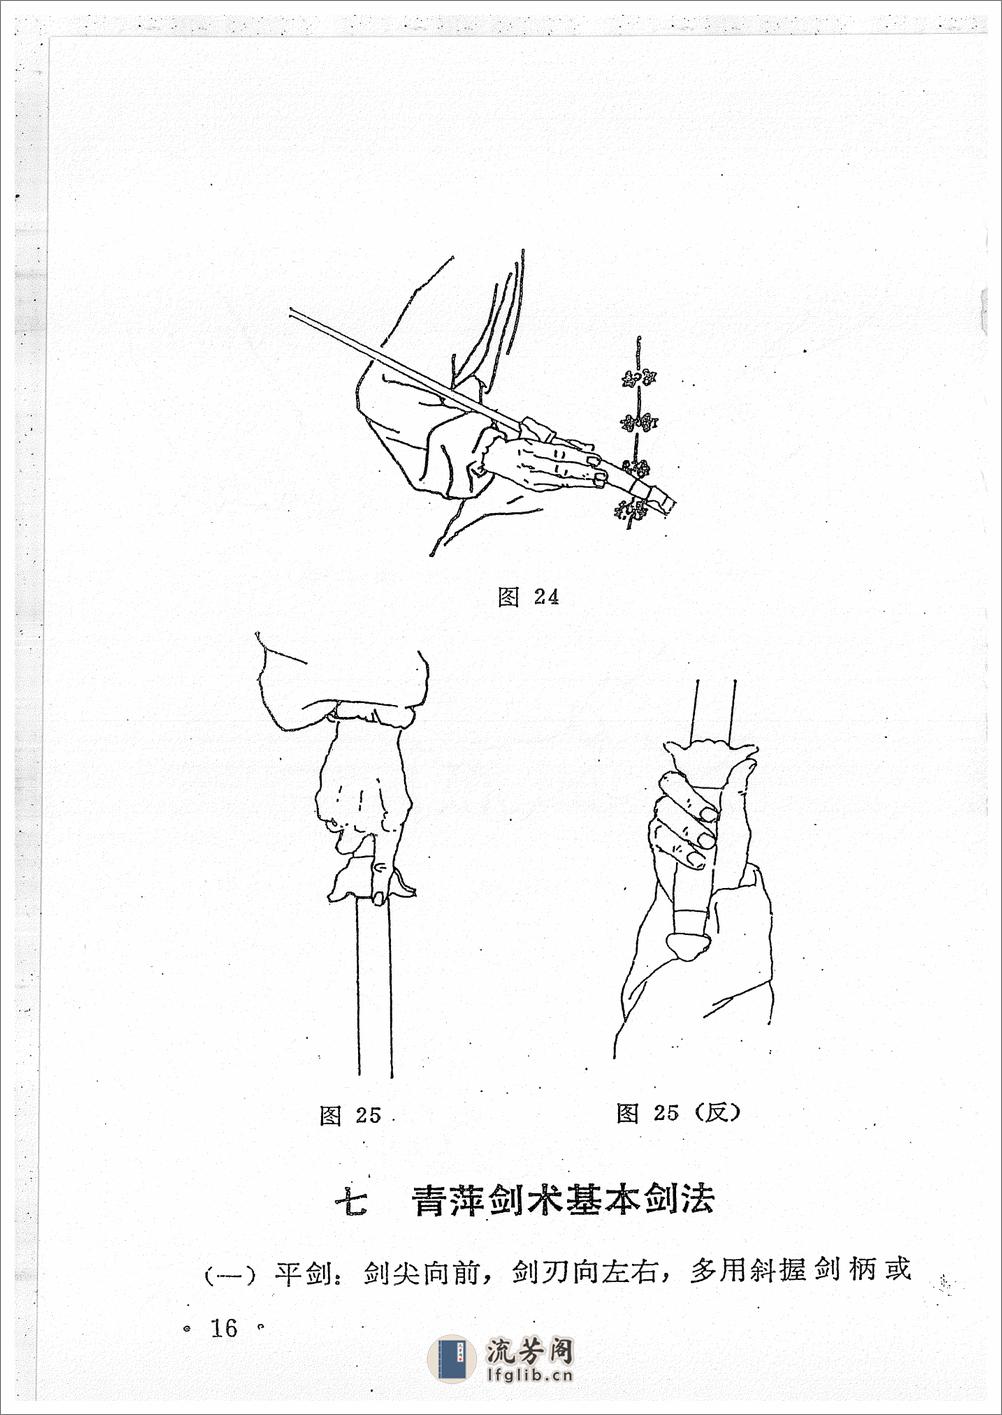 《青萍剑》贾勃生、刘滋茂 - 第18页预览图